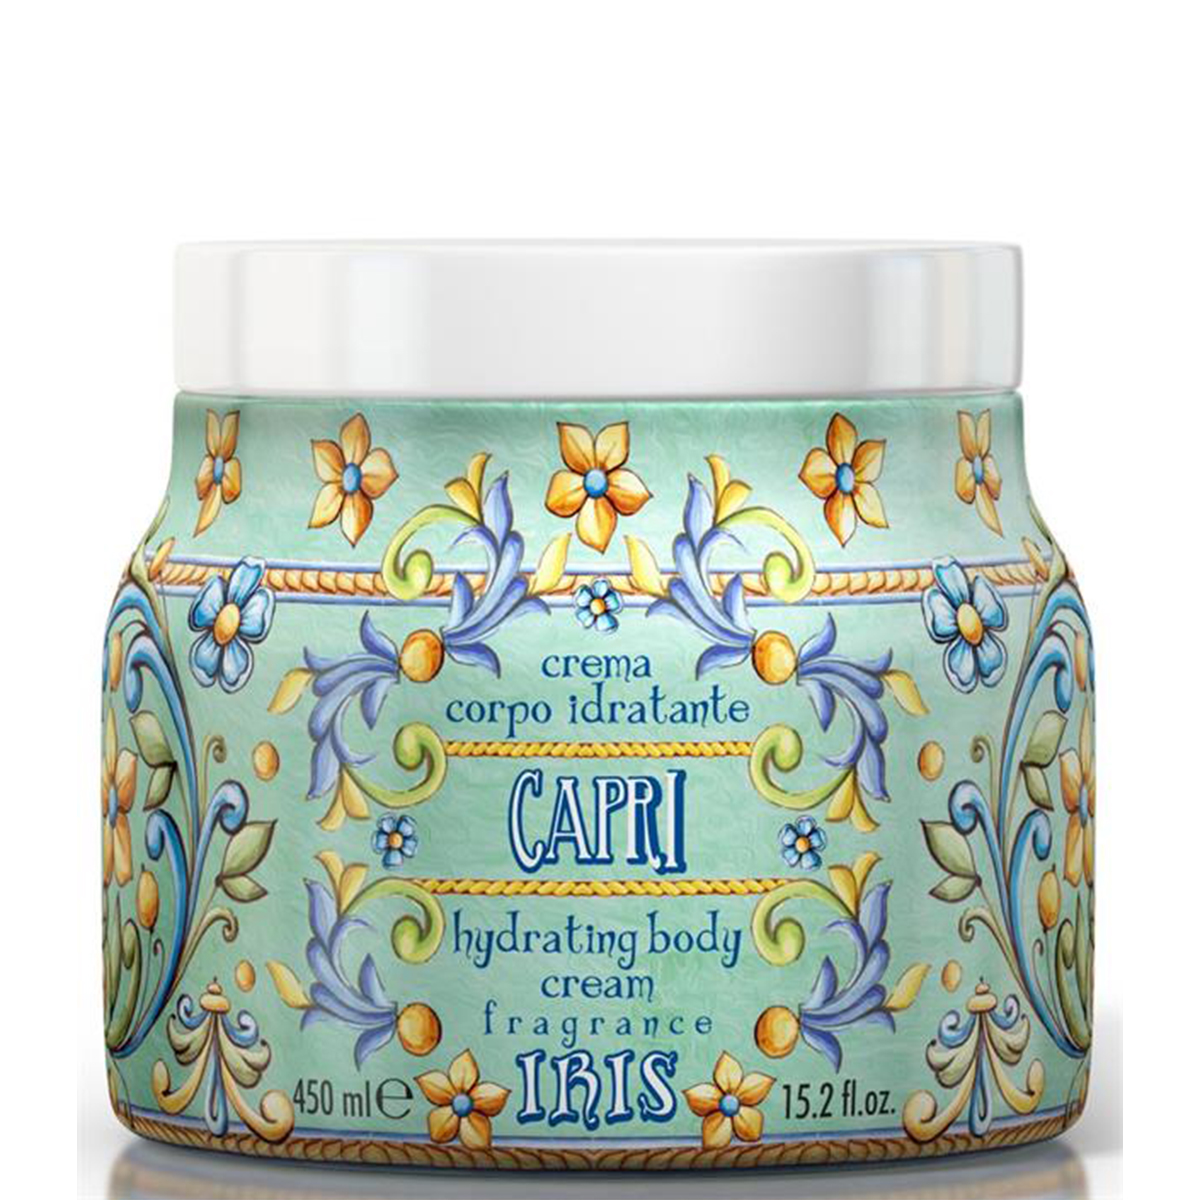 Maioliche Capri Body Cream 450ml